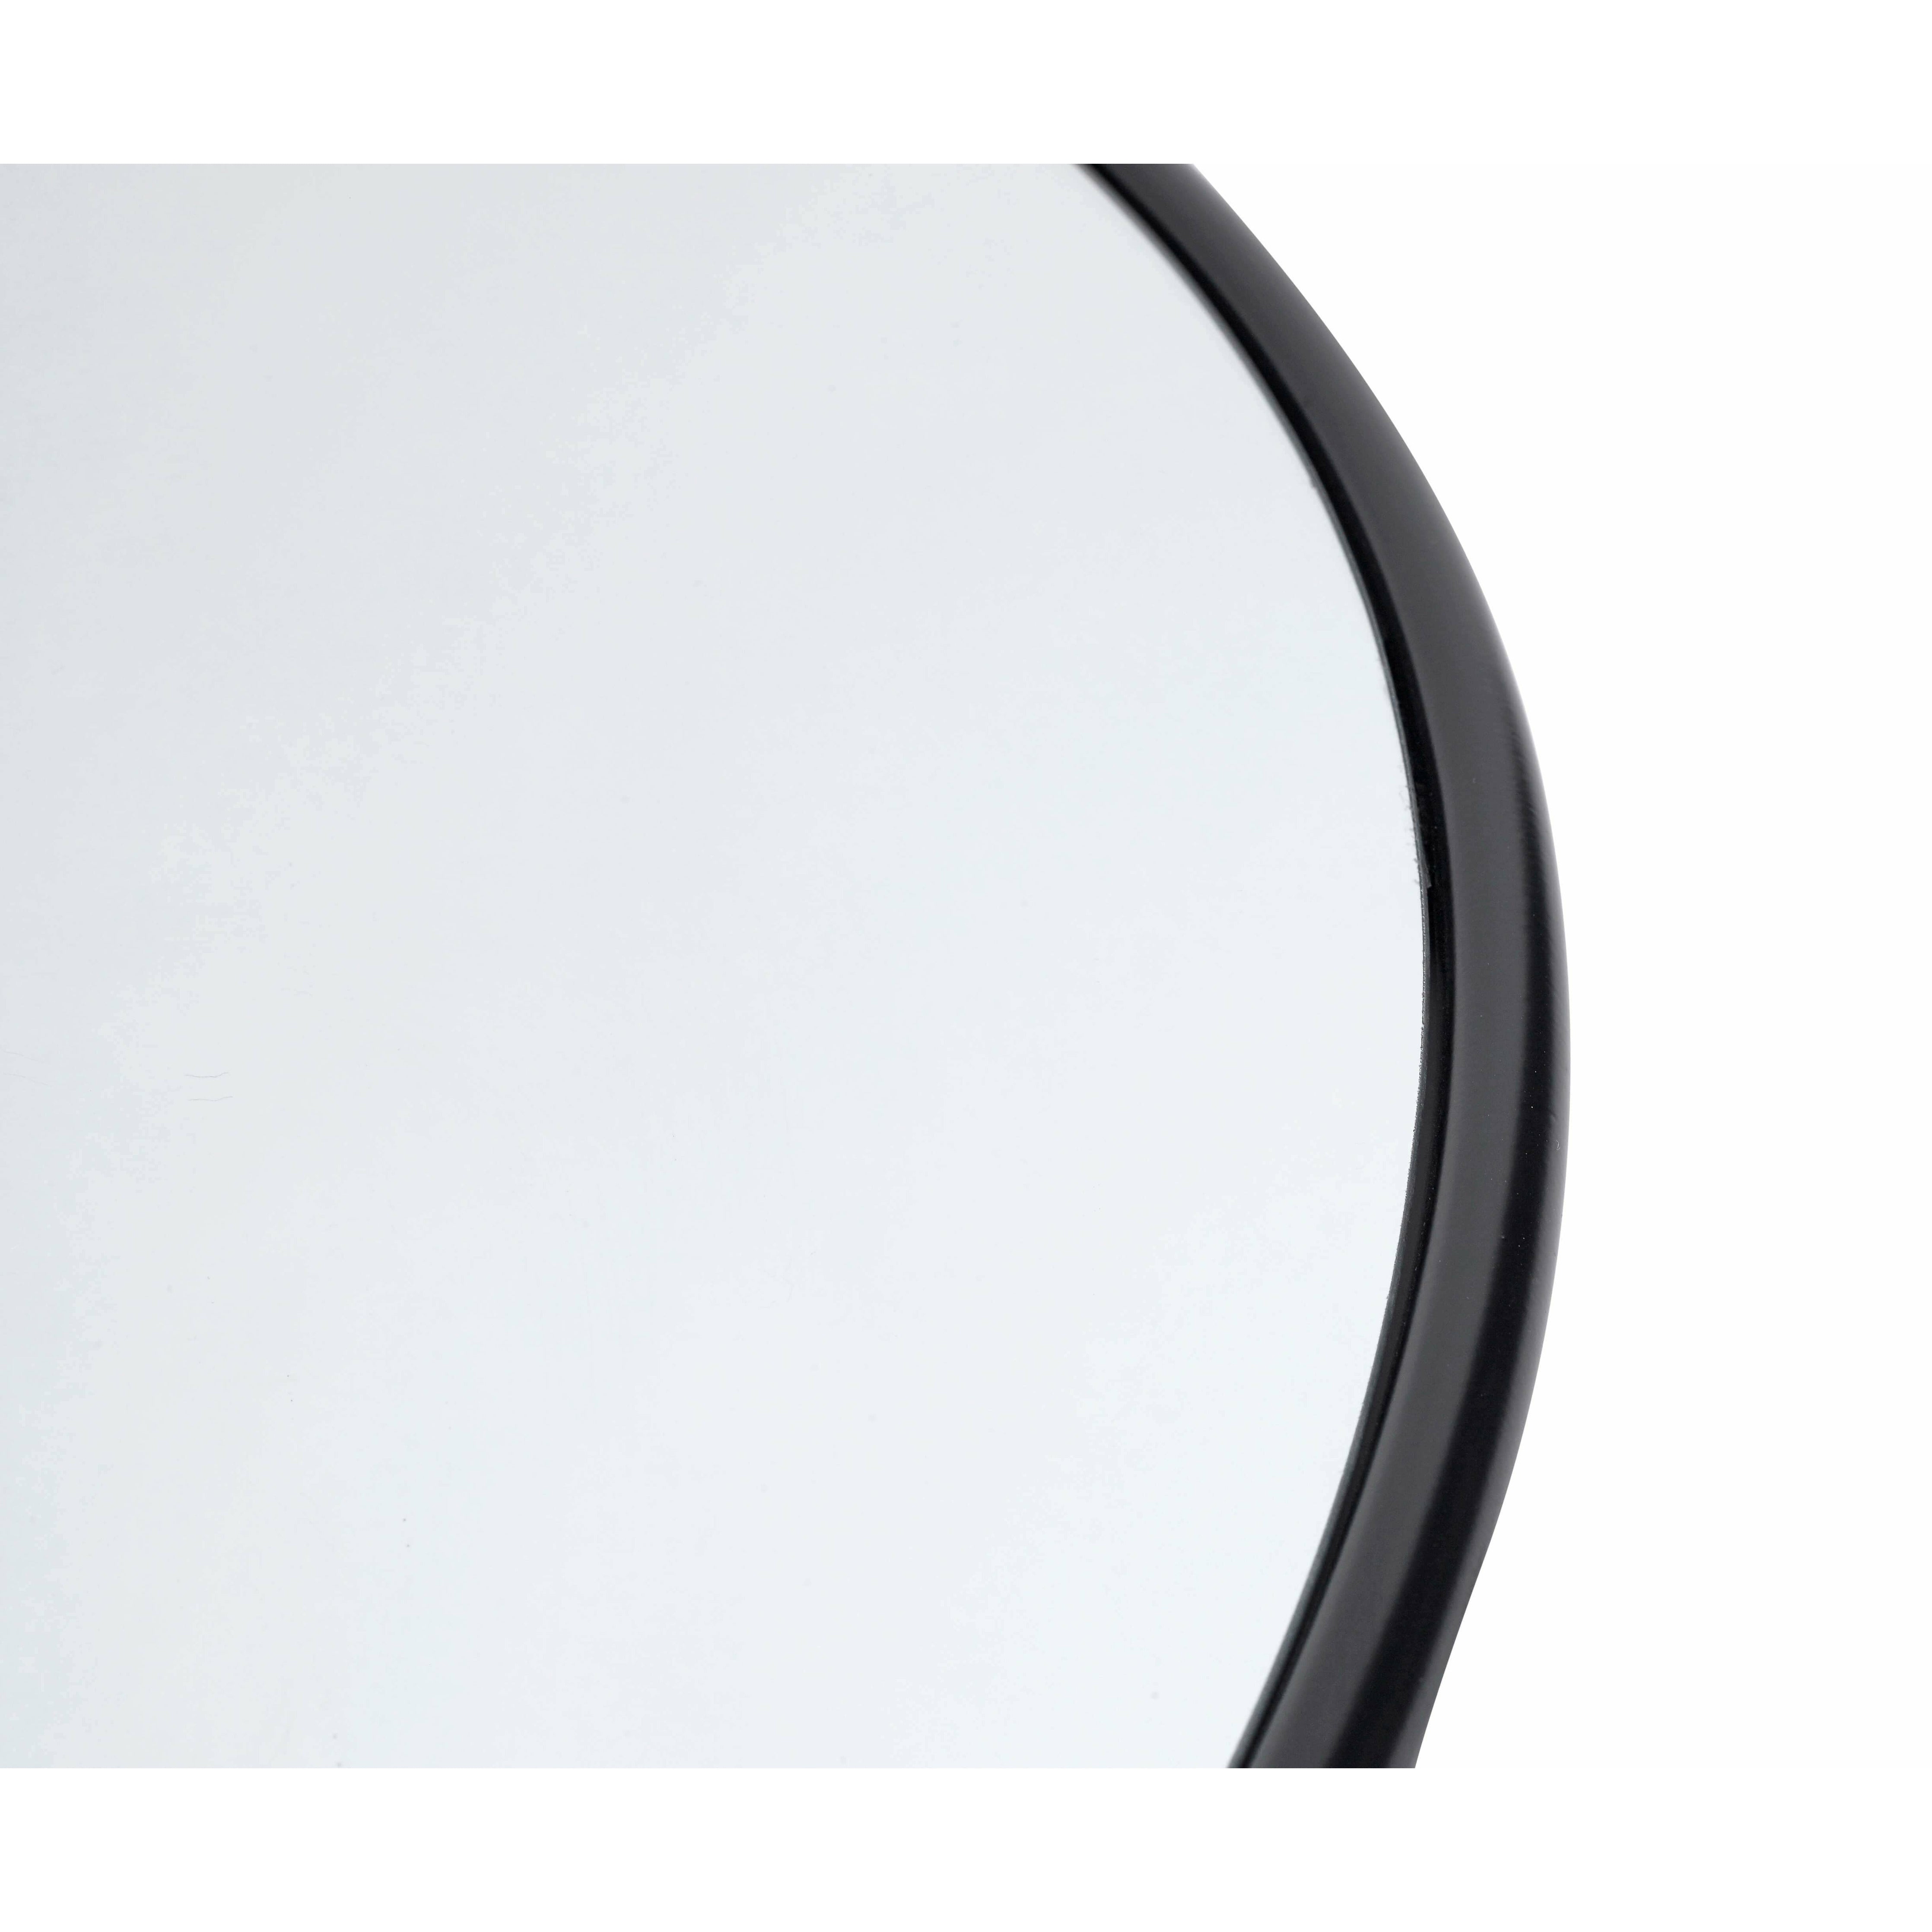 Muubs Kööpenhamina peili pyöreä musta, 110 cm